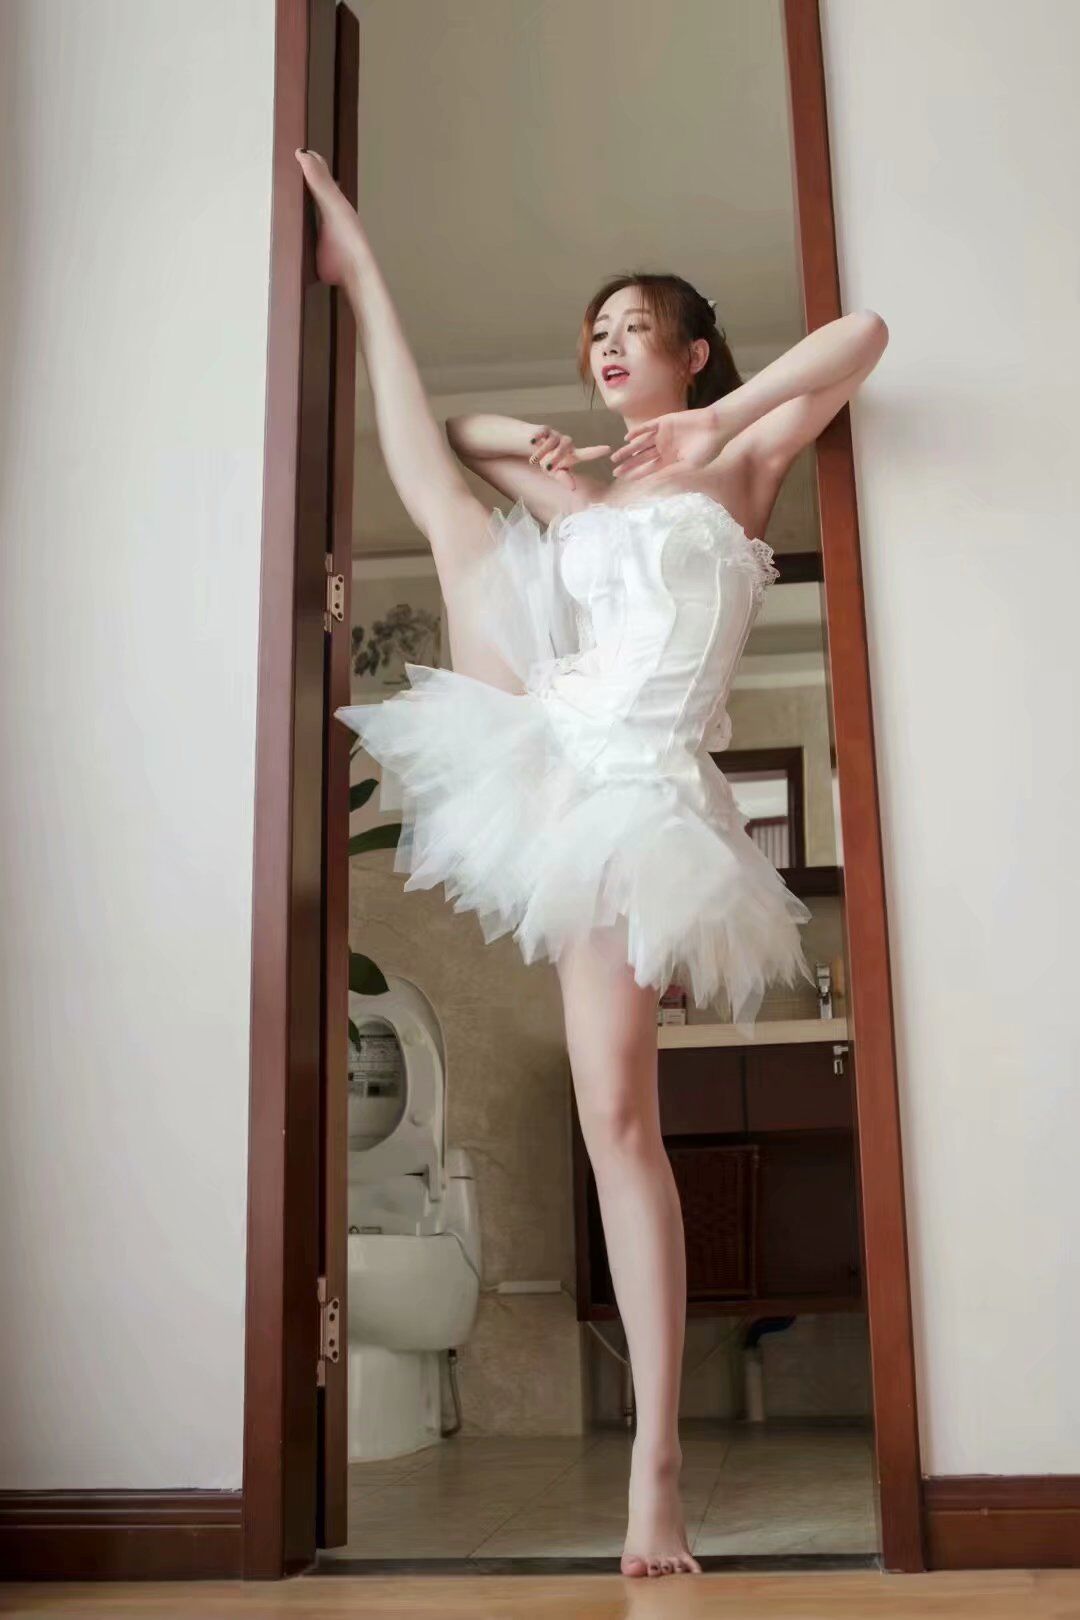 一个爱芭蕾的女孩,腿很长,人也很美